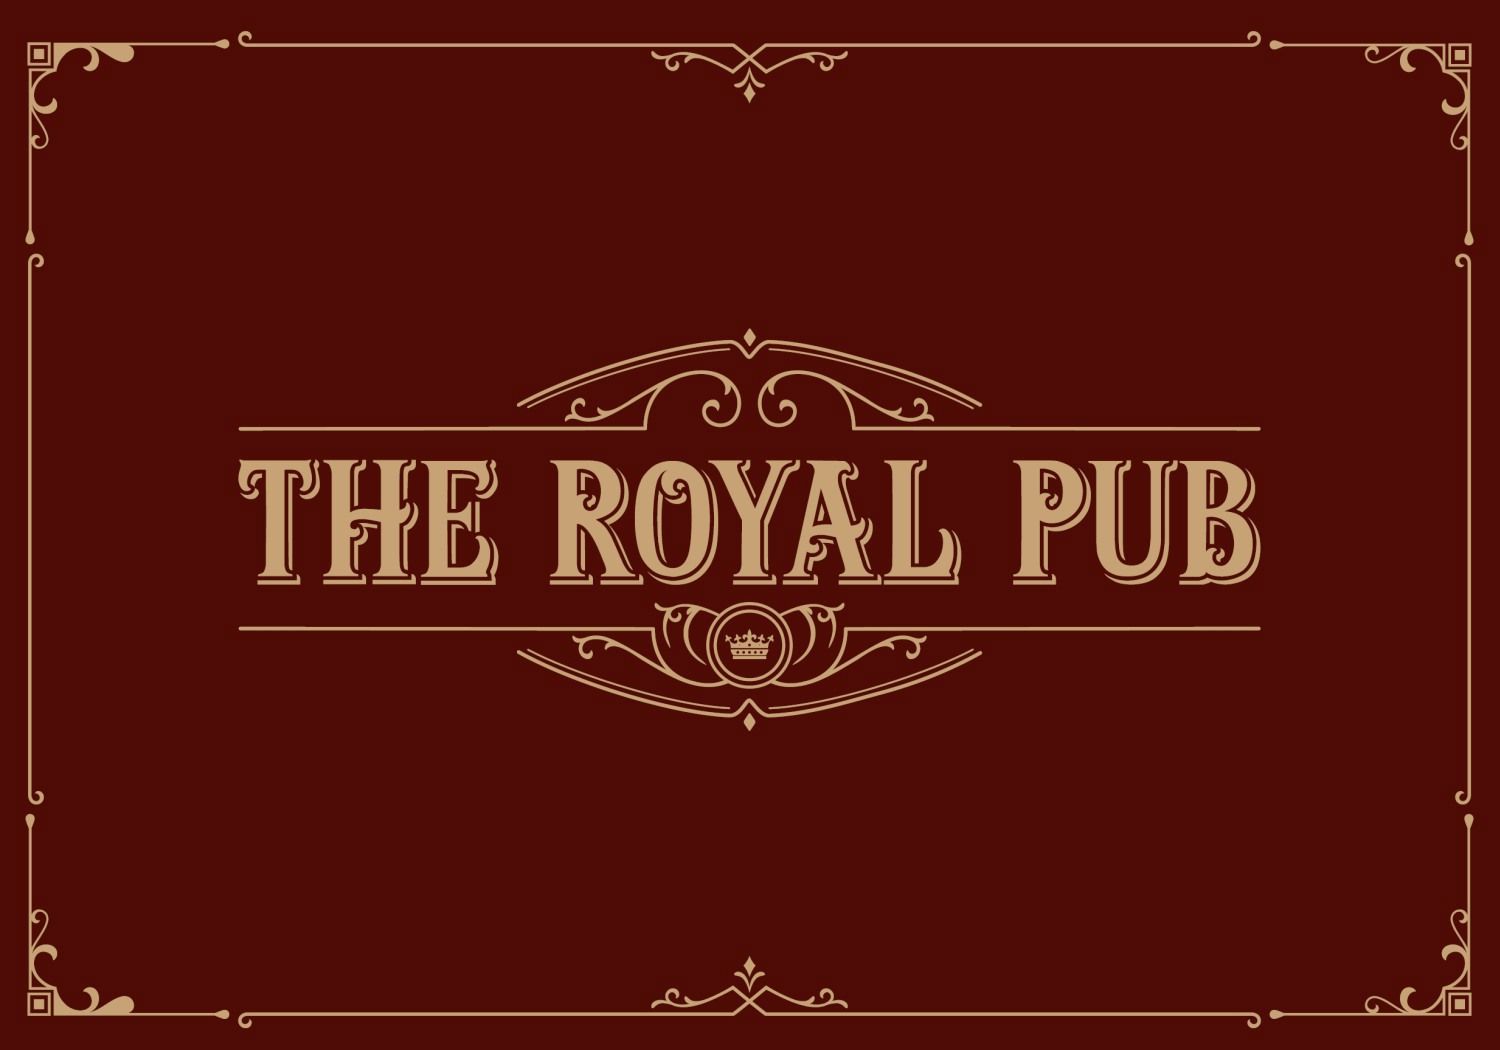 The Royal Pub